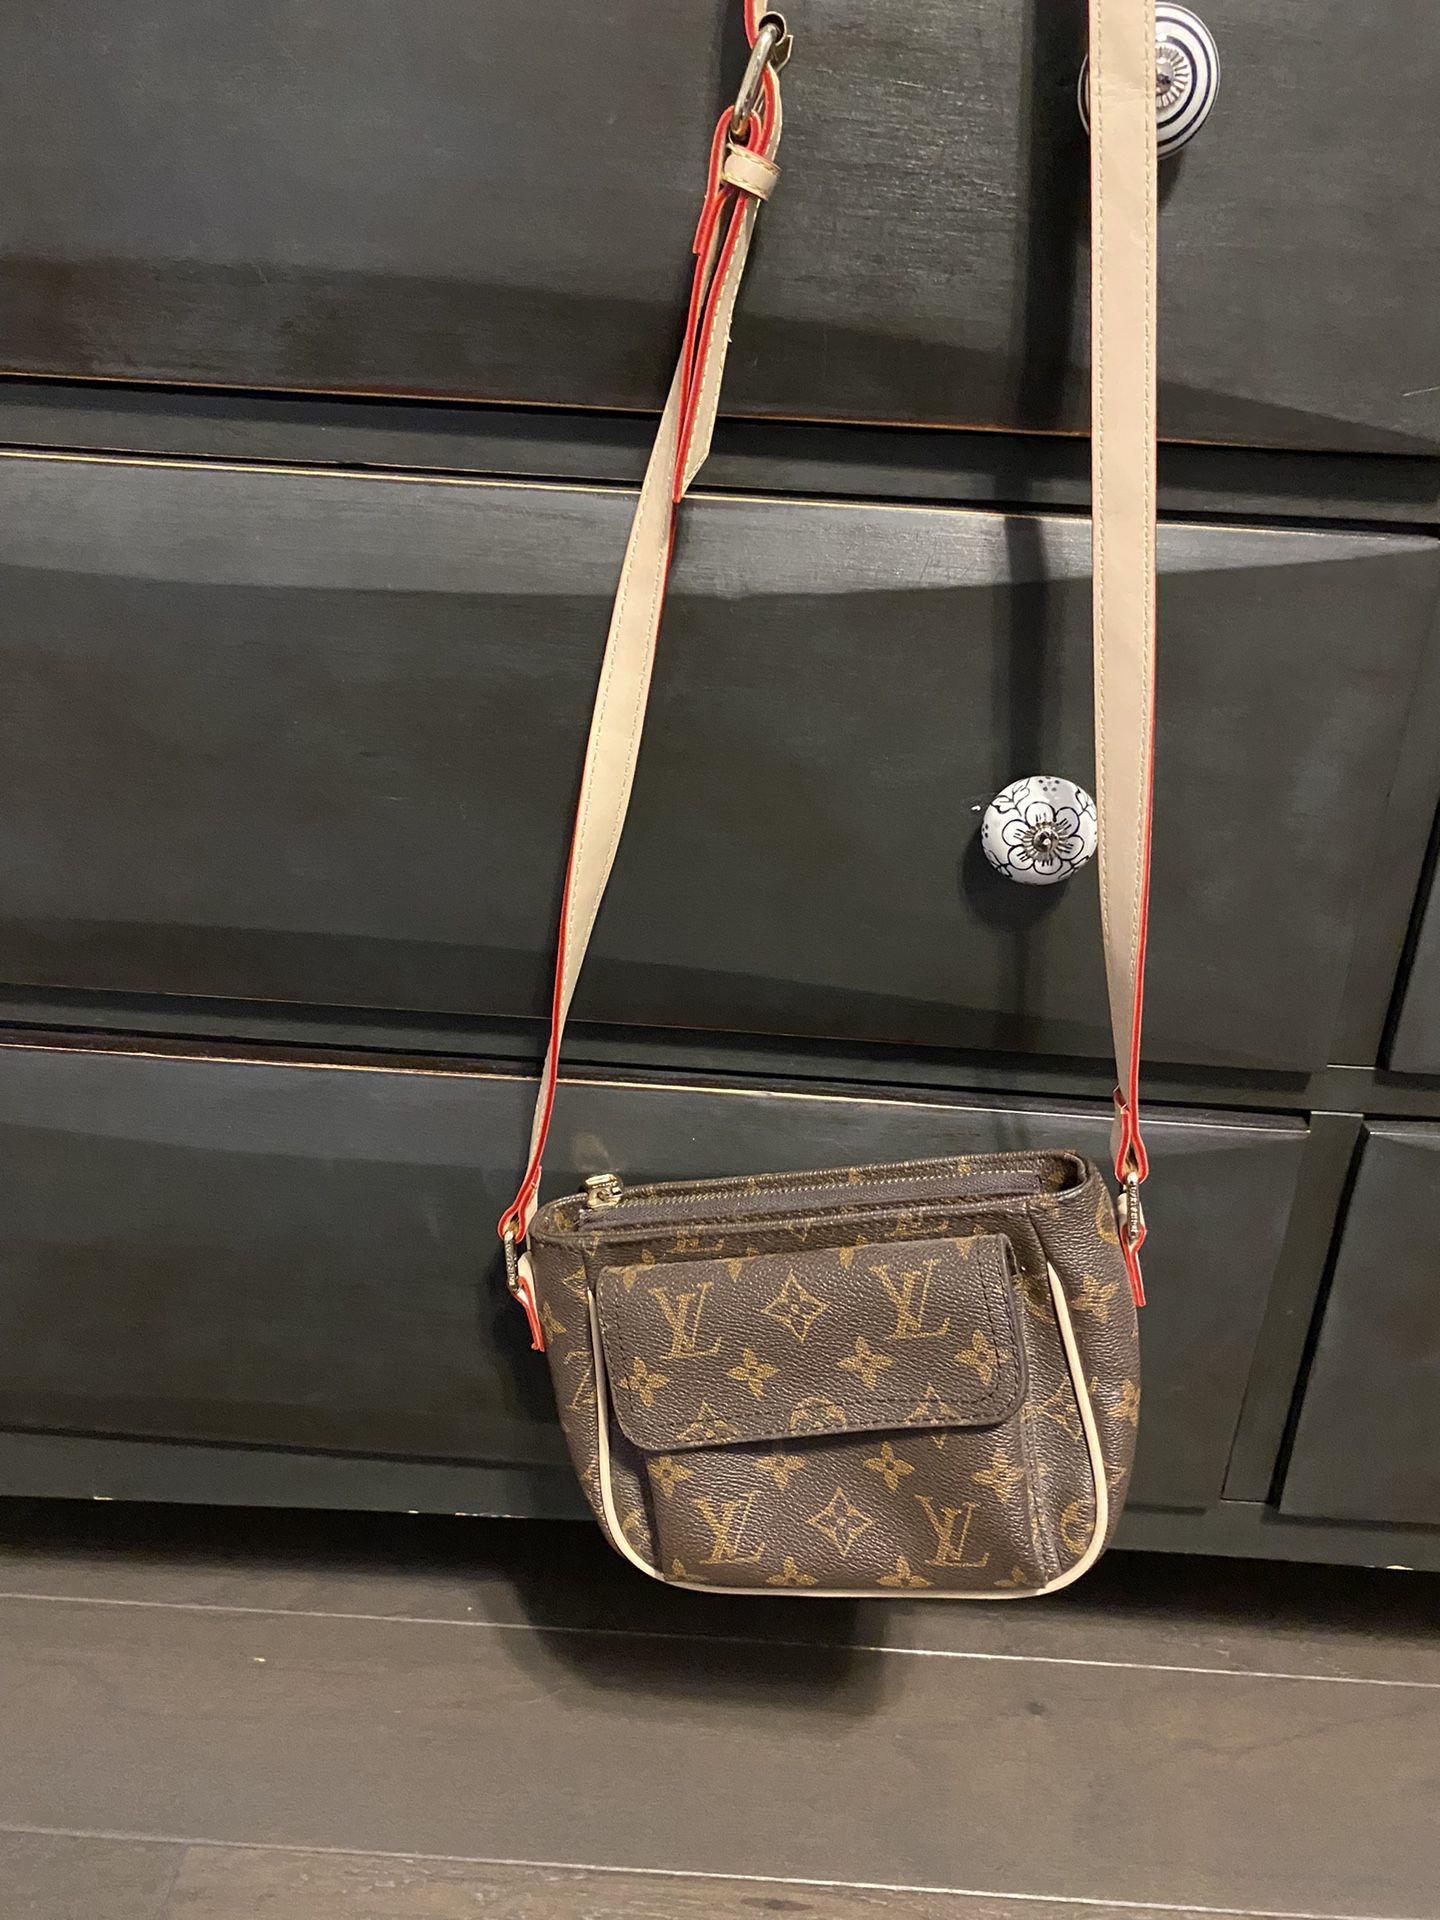 Real Louis Vuitton Crossbody Bag